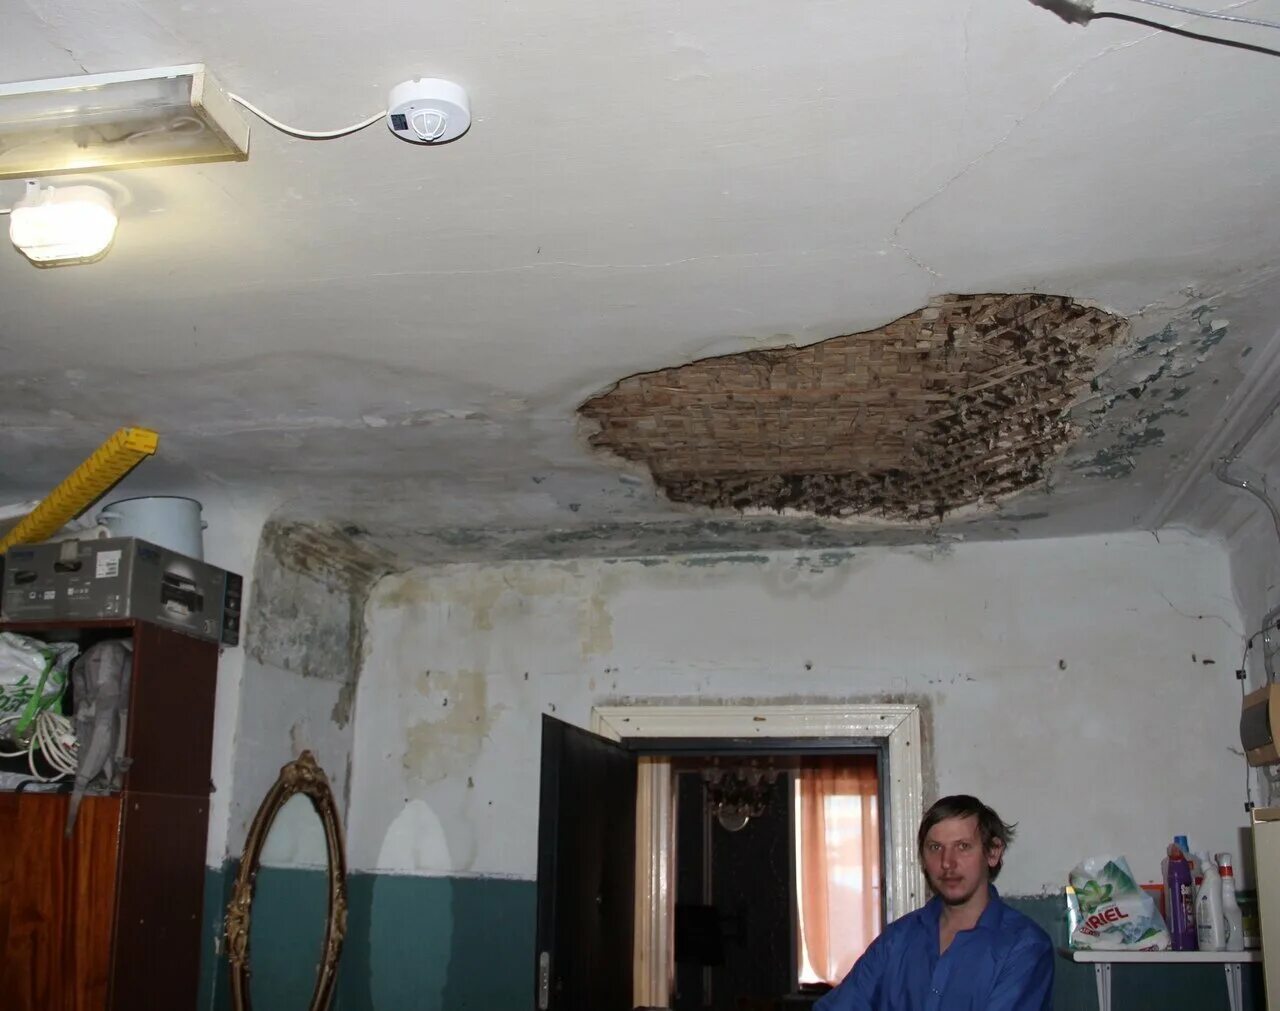 Сонник потолок в квартире. Обвалился потолок в квартире. Рухнул потолок в квартире. Обрушился потолок в квартире. Обвалился потолок частично в квартире.